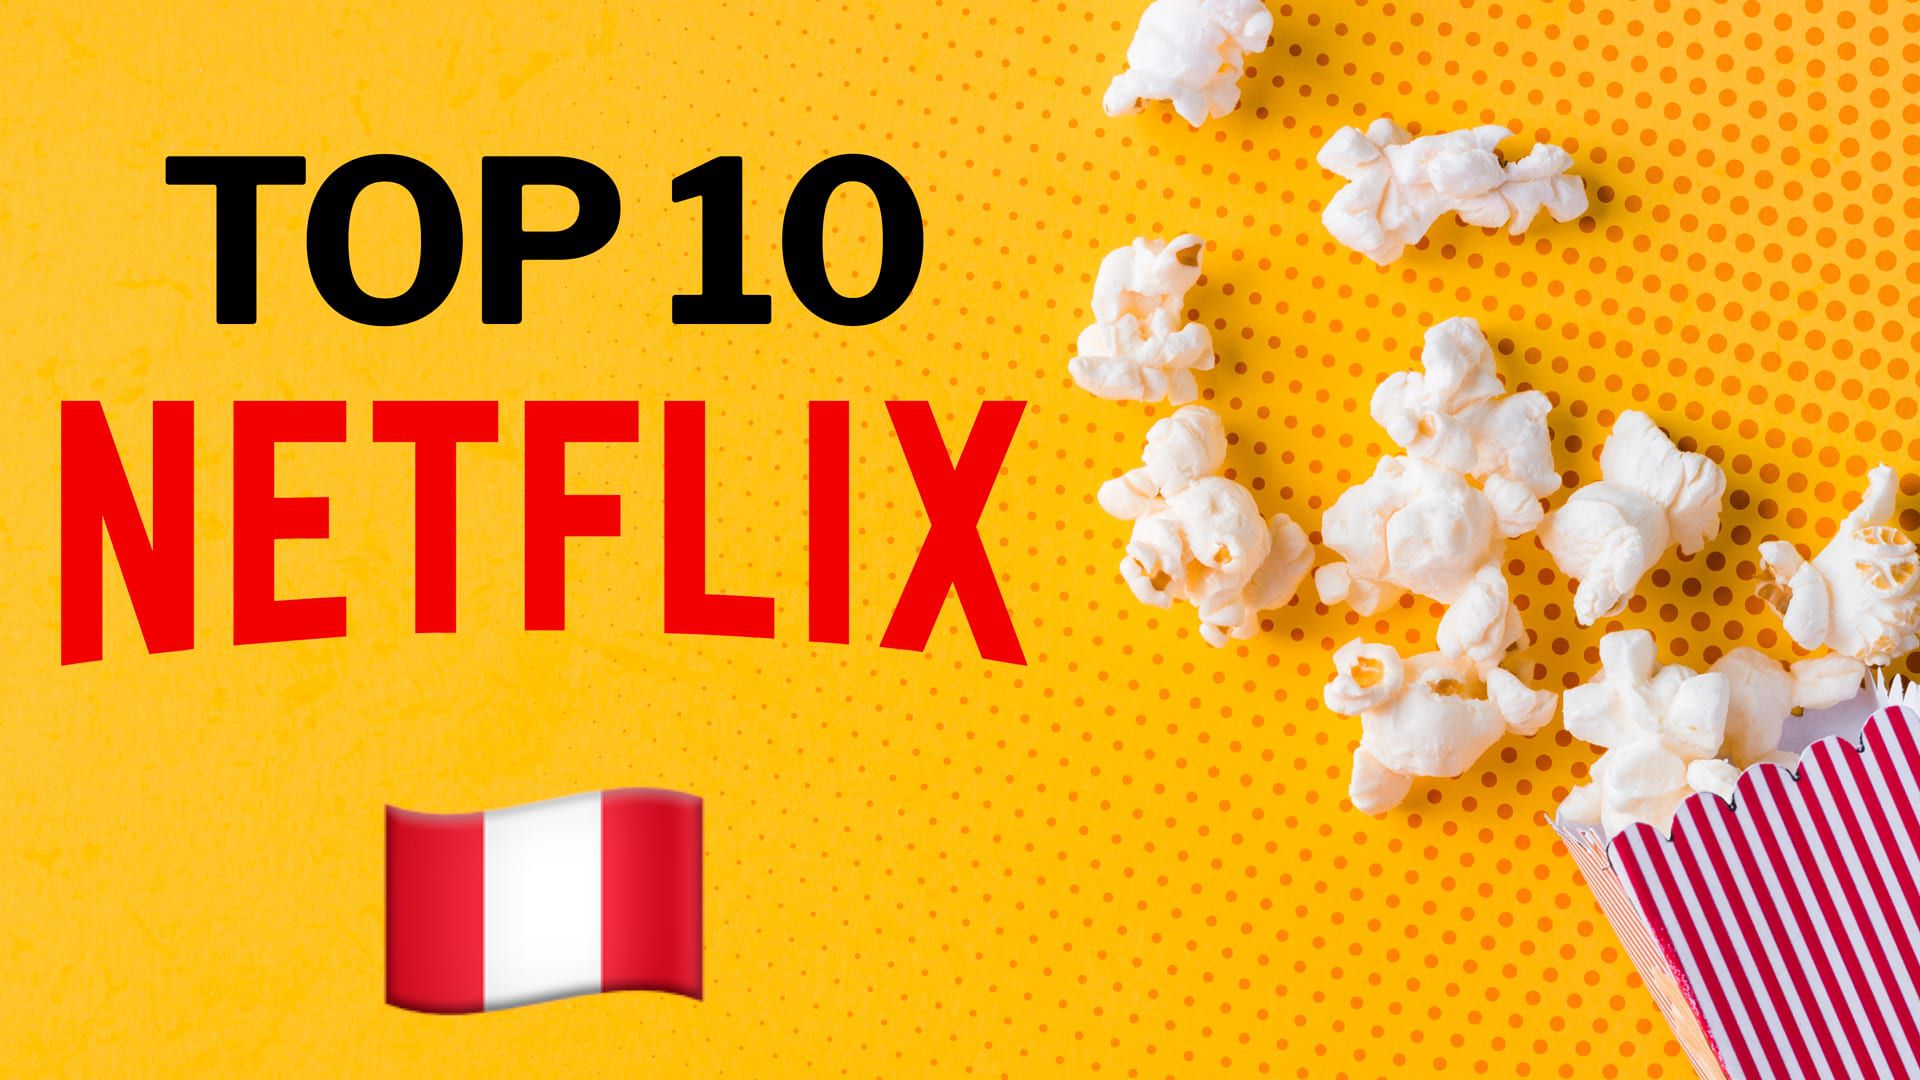 Más de una docena de servicios de streaming compiten de forma feroz para ser los reyes del mercado, entre ellos Netflix. (Infobae)